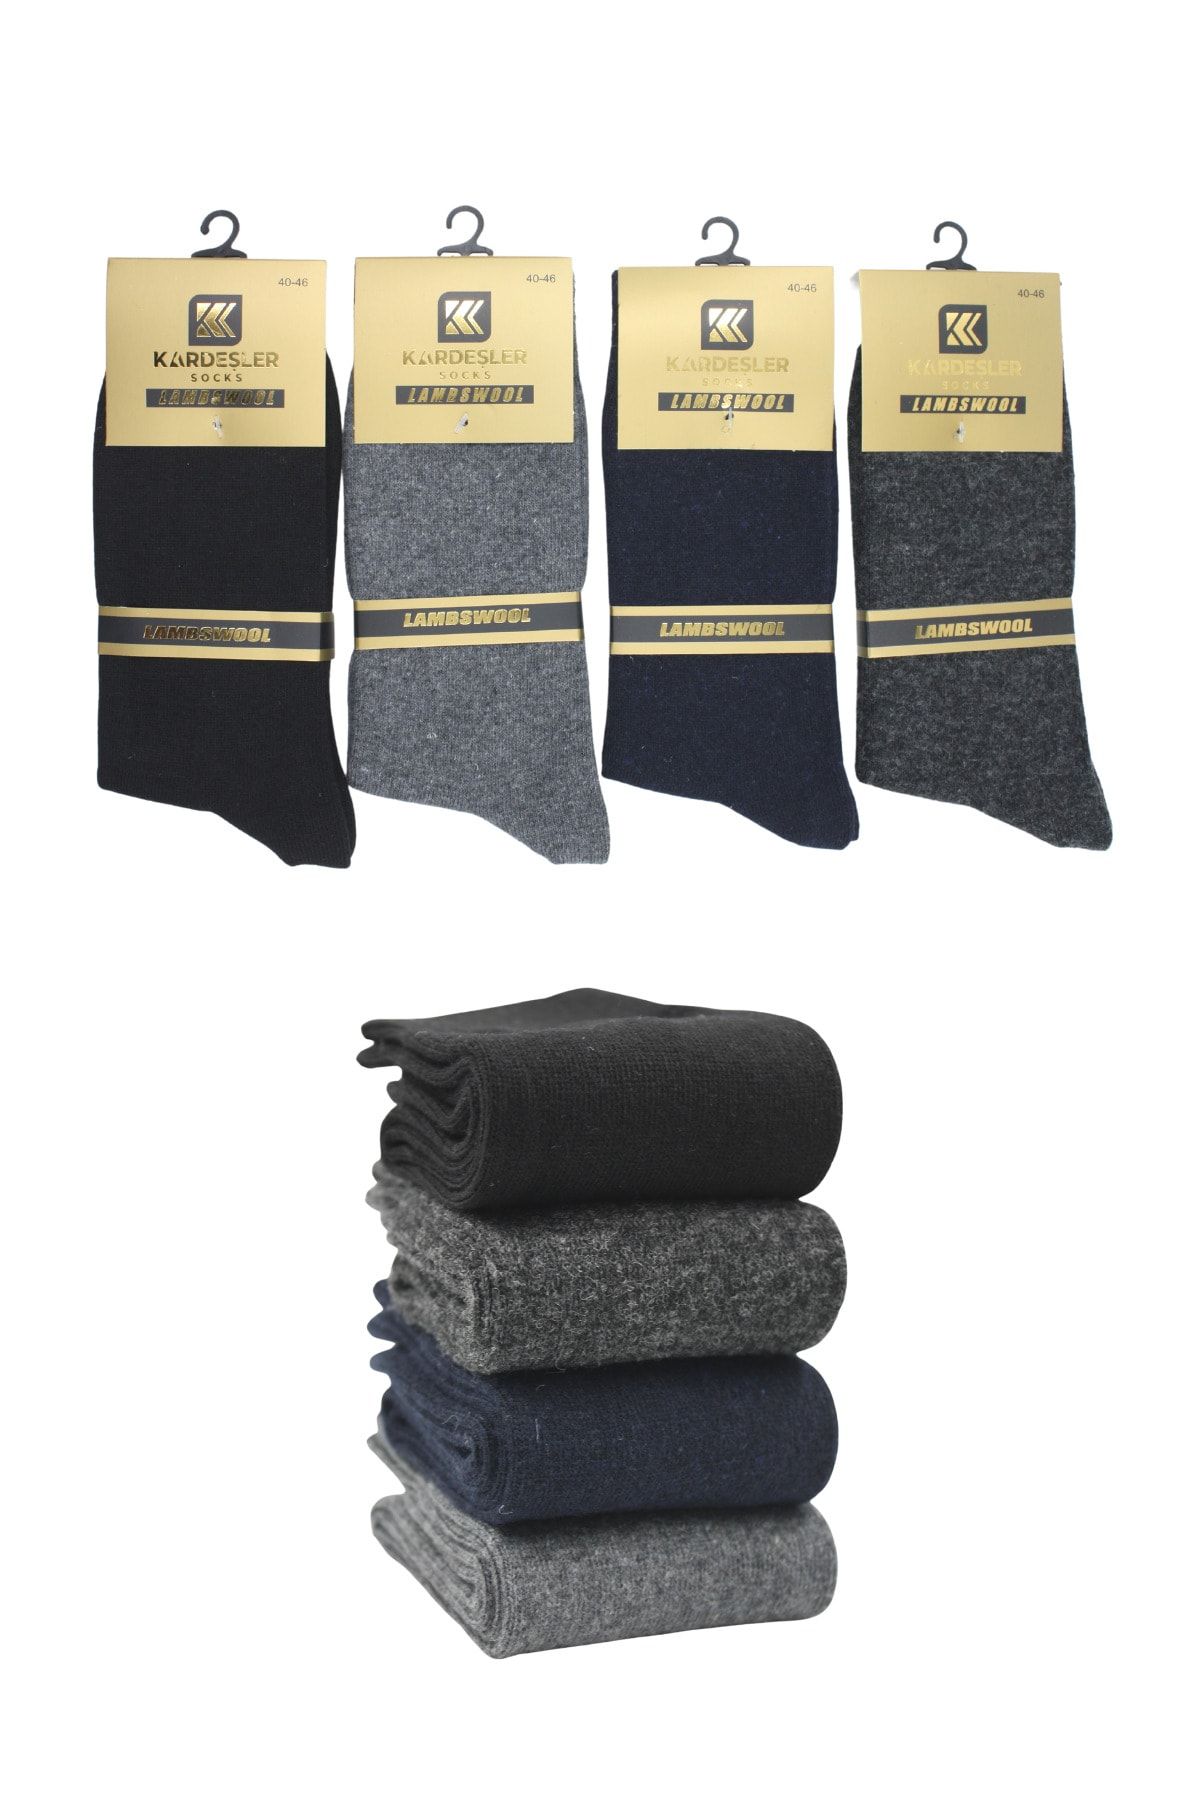 KARDEŞLER ÇORAP Erkek Lambswool Yün Kışlık Çok Renkli Soket Çorap 4'lü Paket